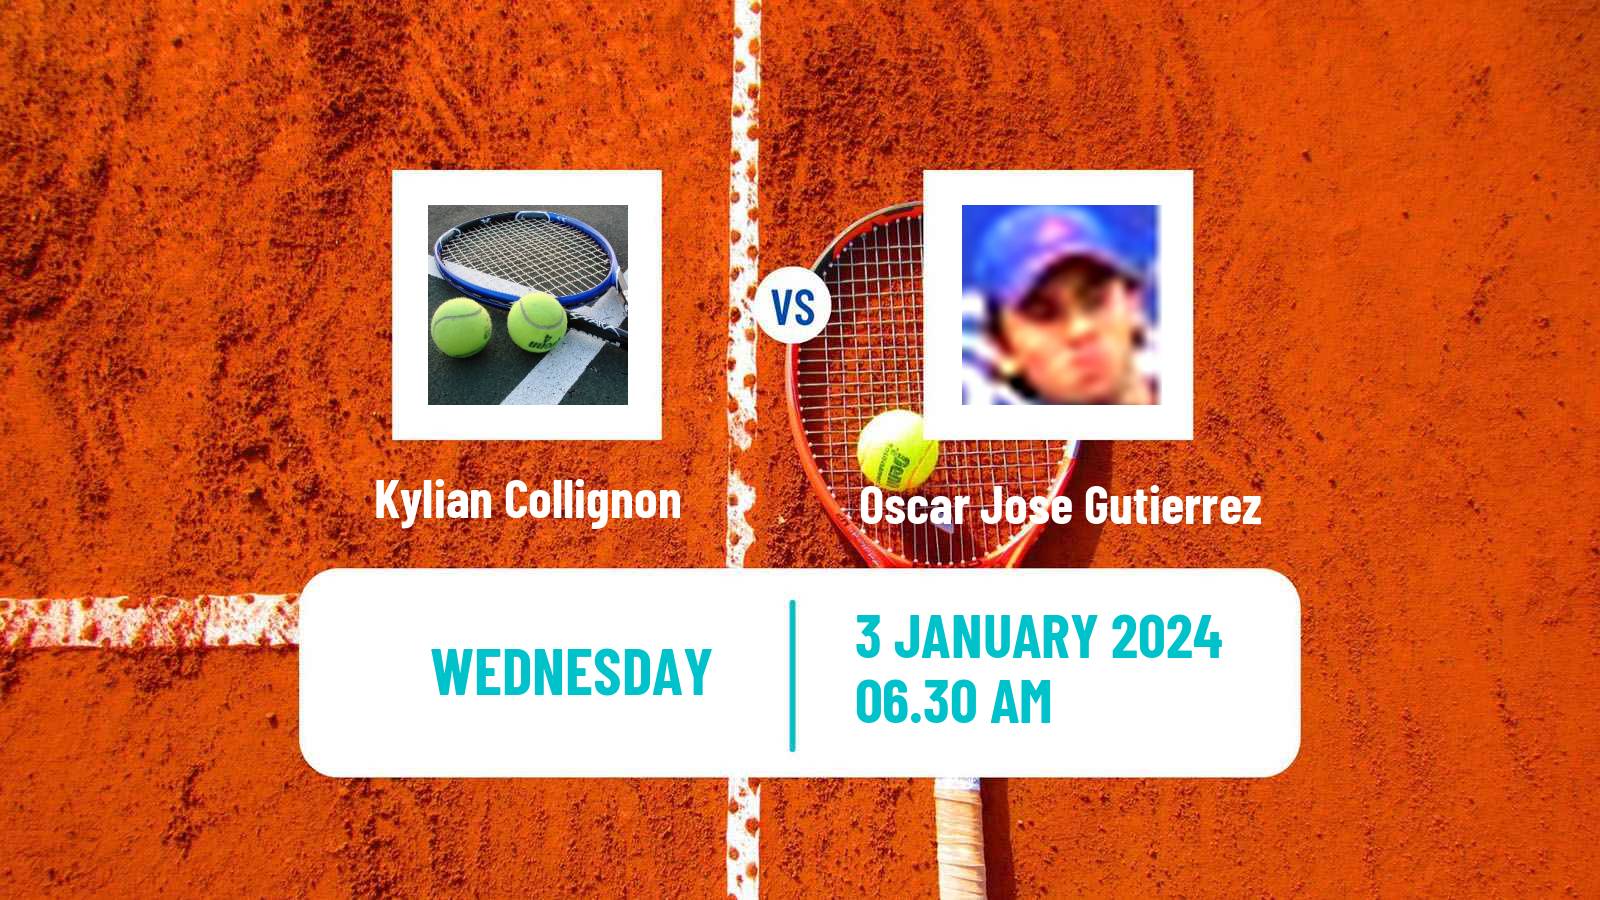 Tennis ITF M25 Esch Alzette Men Kylian Collignon - Oscar Jose Gutierrez